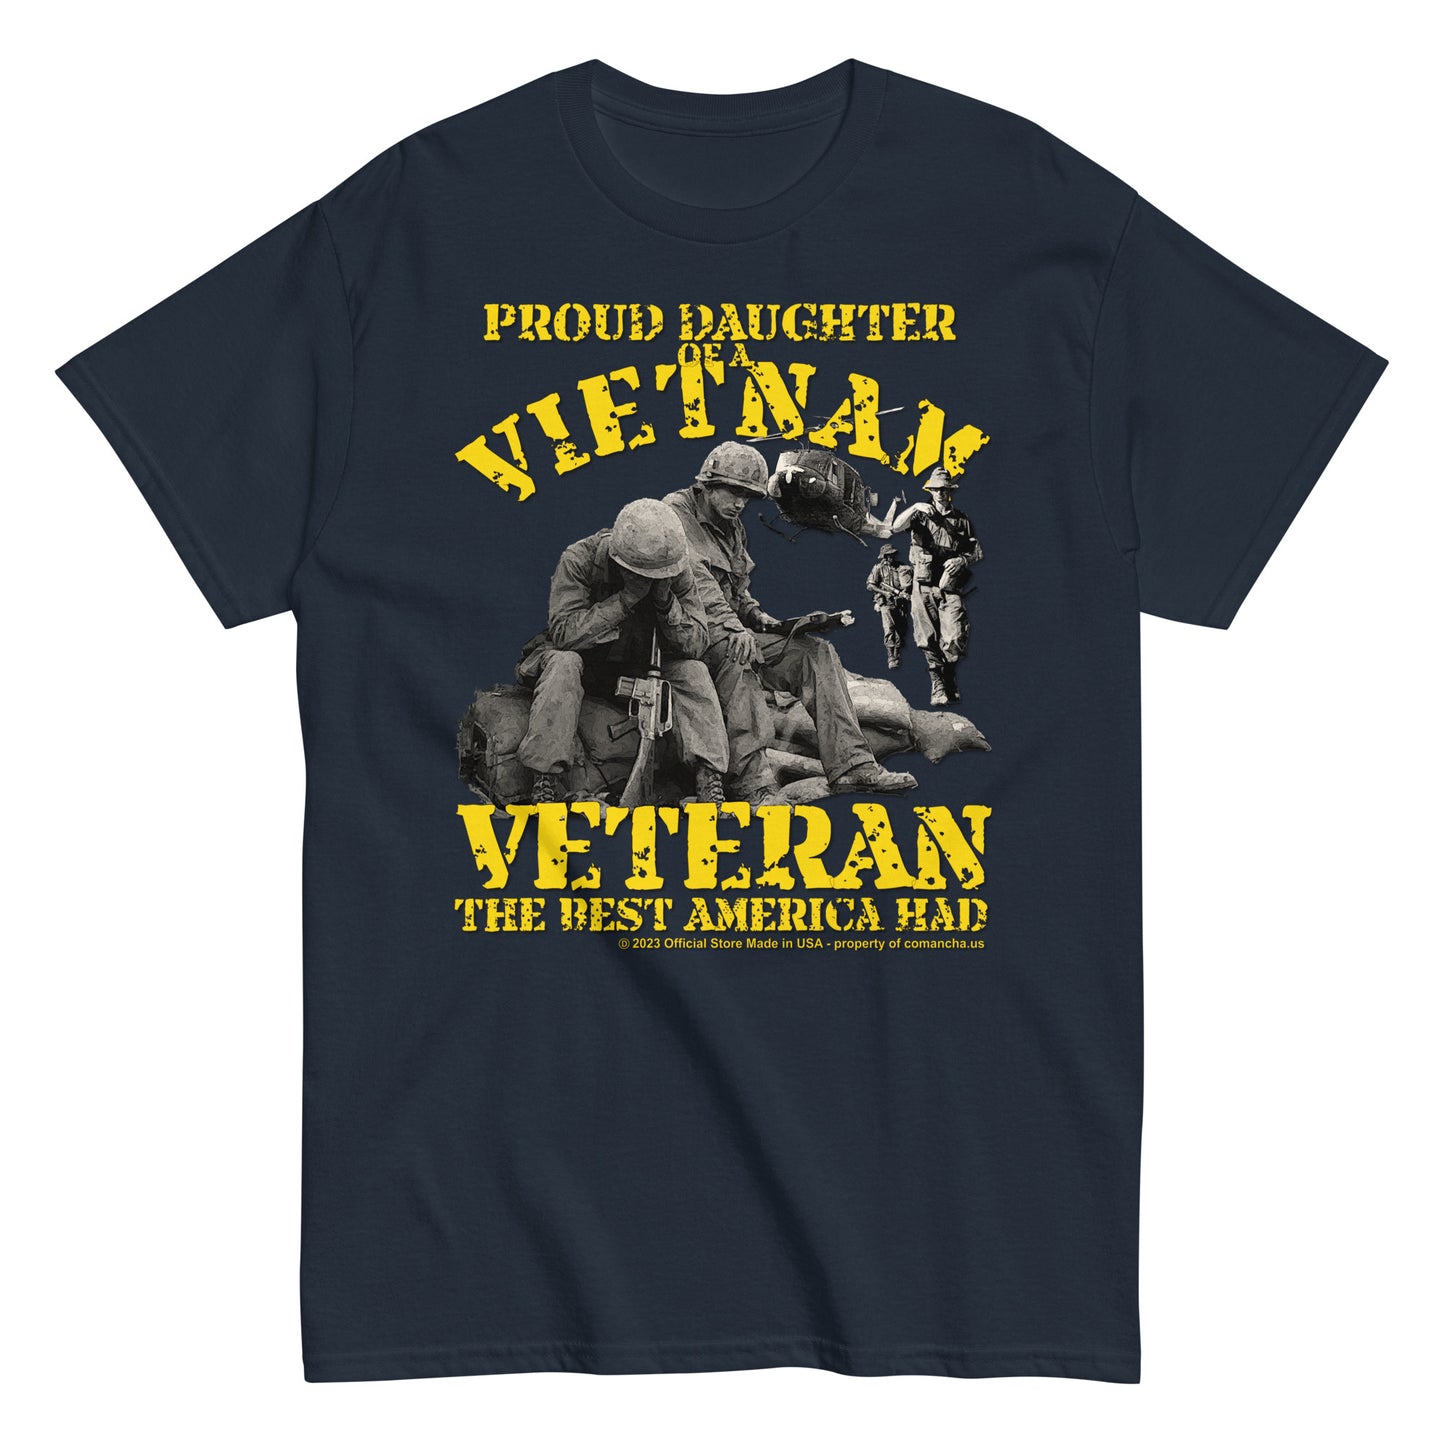 Proud Daughter of a Vietnam Veteran T-shirt, Vietnam veterans t-shirt, Vietnam war tee, us army veterans tee,Armay veterans t-shirt,comancha graphics,